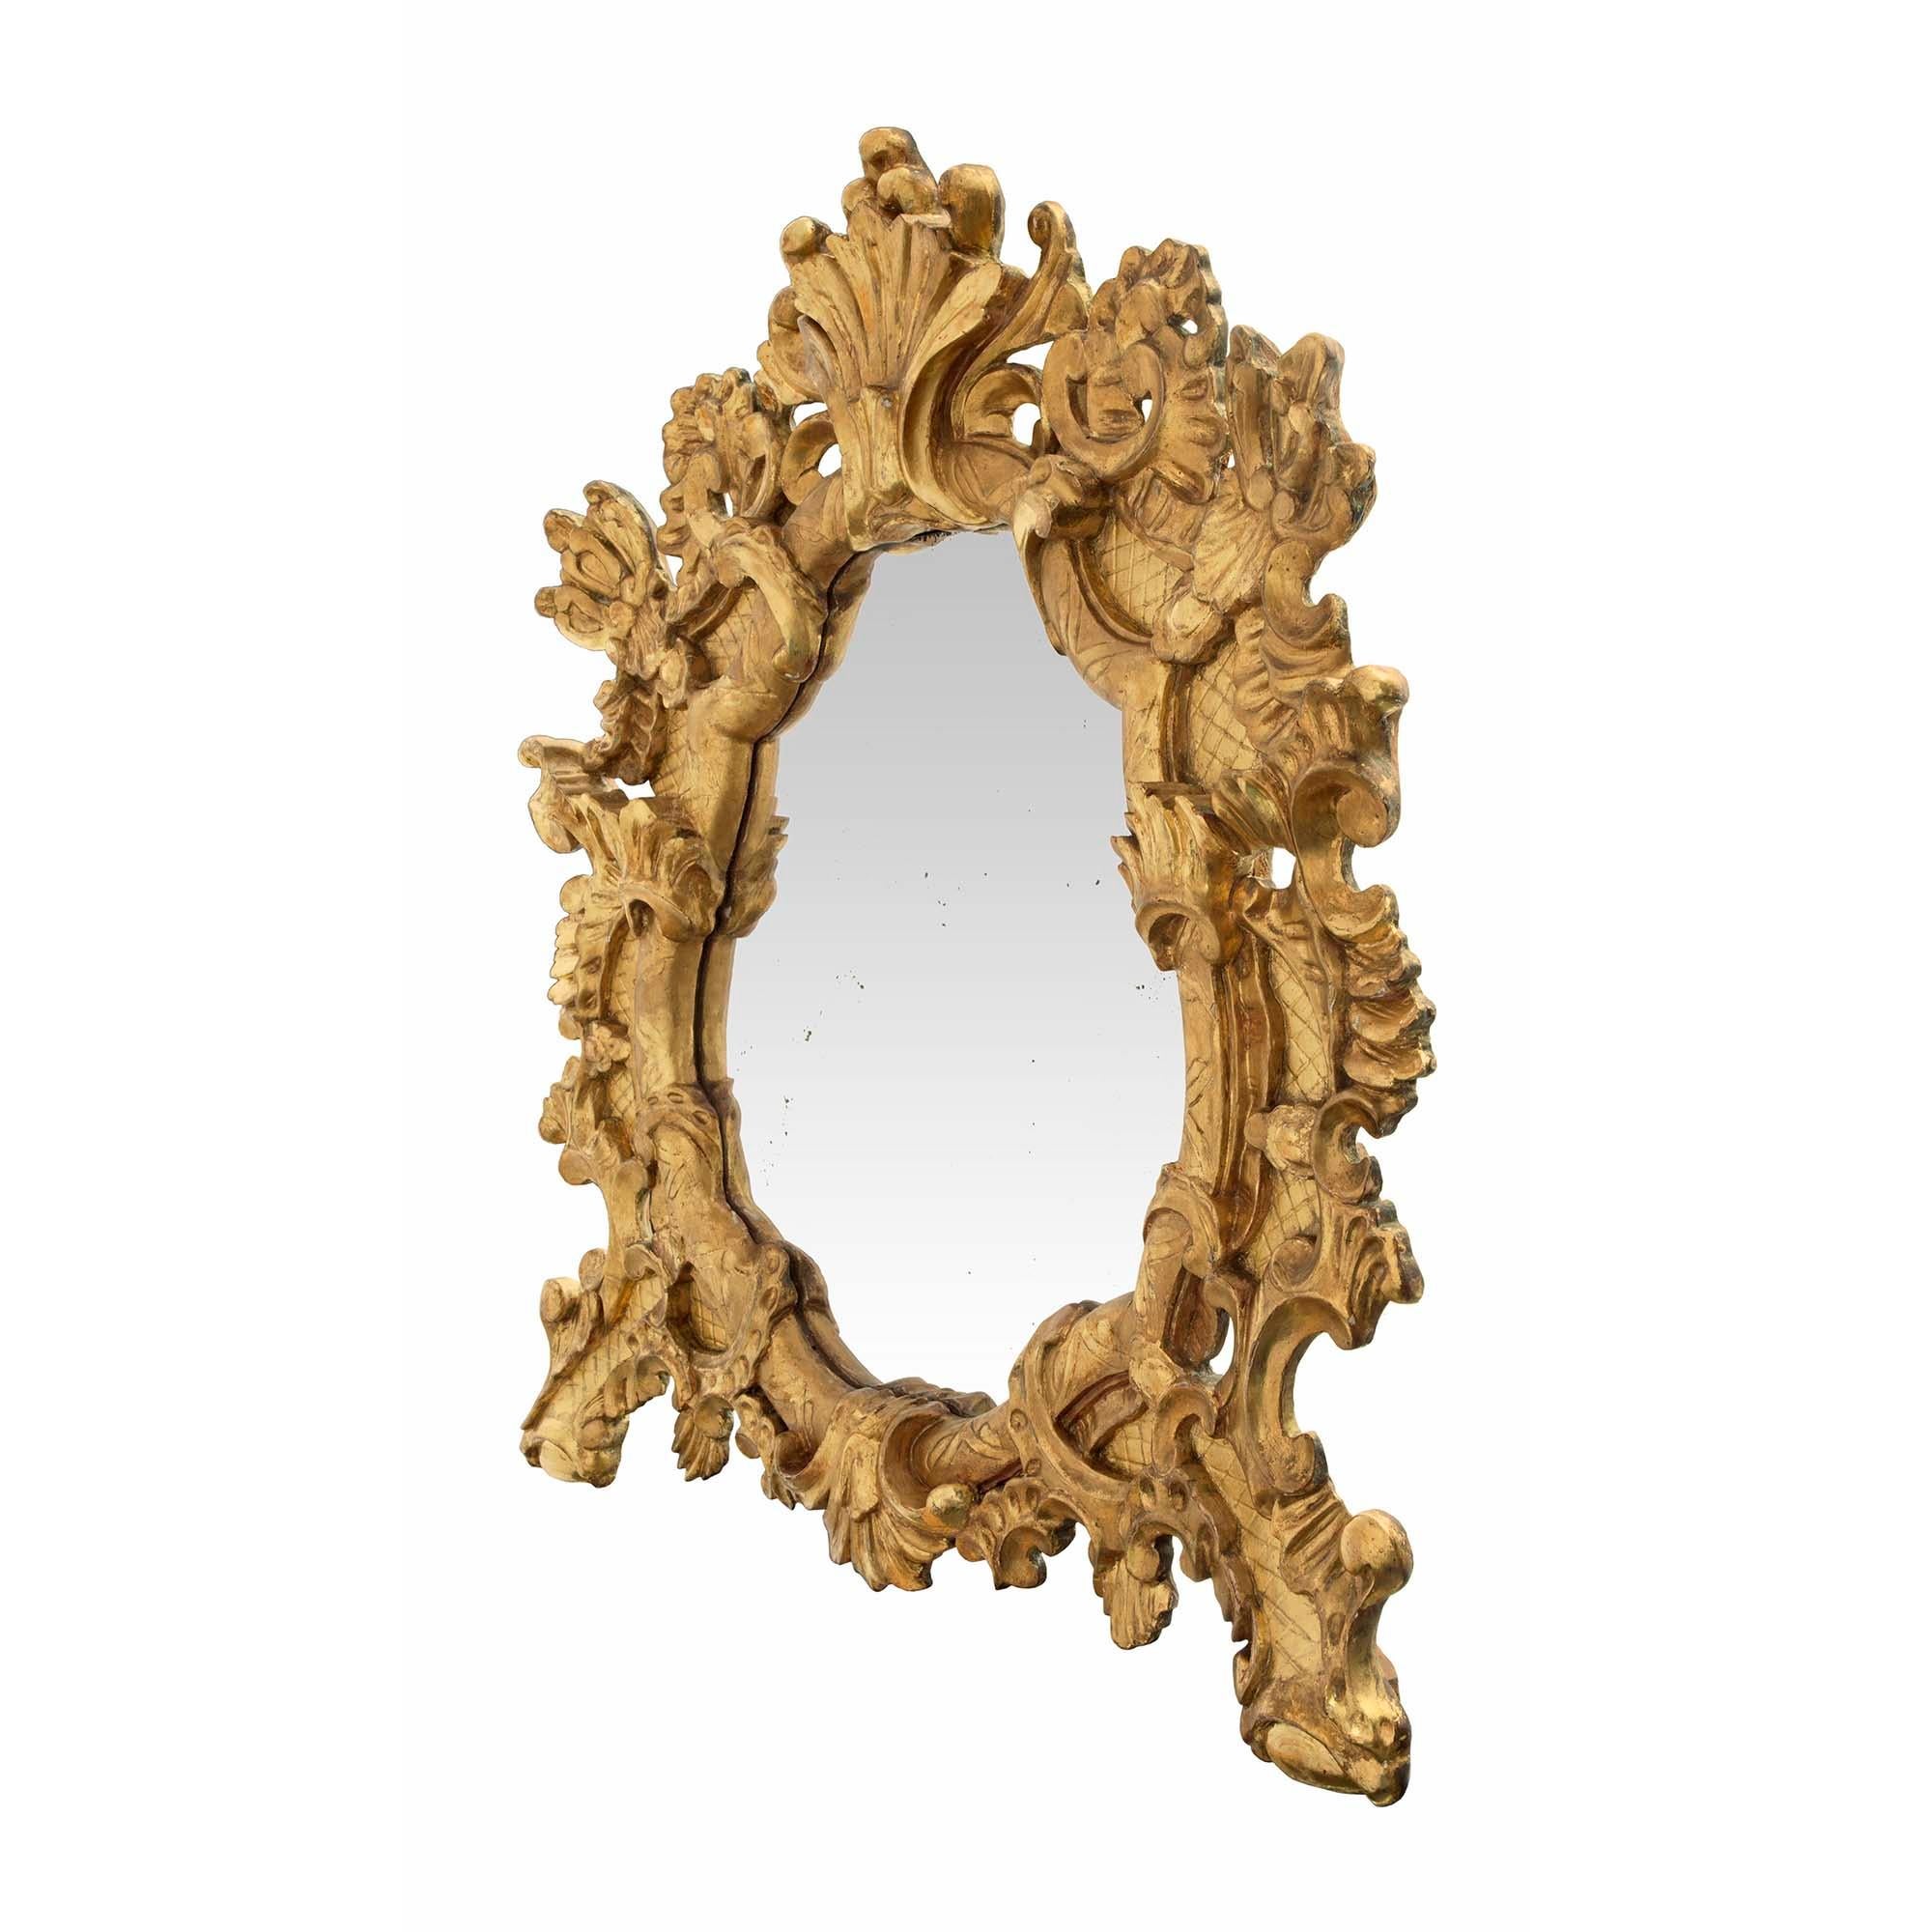 Un beau et unique miroir baroque italien du début du 19ème siècle en bois doré. Le miroir est surélevé par deux pieds très décoratifs avec de grandes feuilles d'acanthe enroulées et un fin motif de treillis qui s'étend sur tout le cadre. La plaque